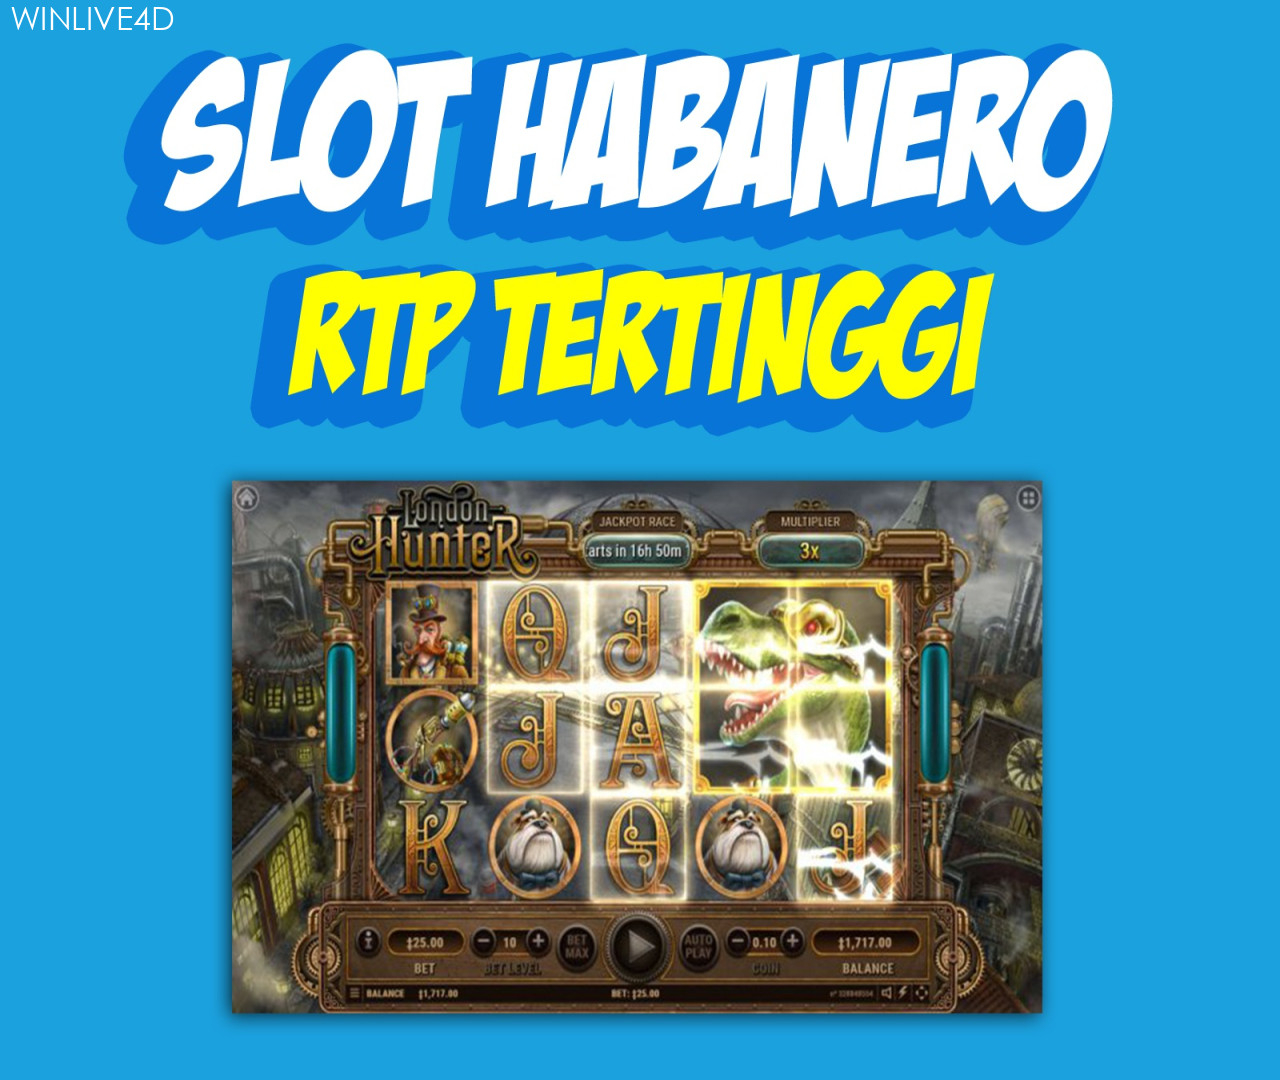 Slot Habanero RTP Tertinggi by Bang Adol on Dribbble